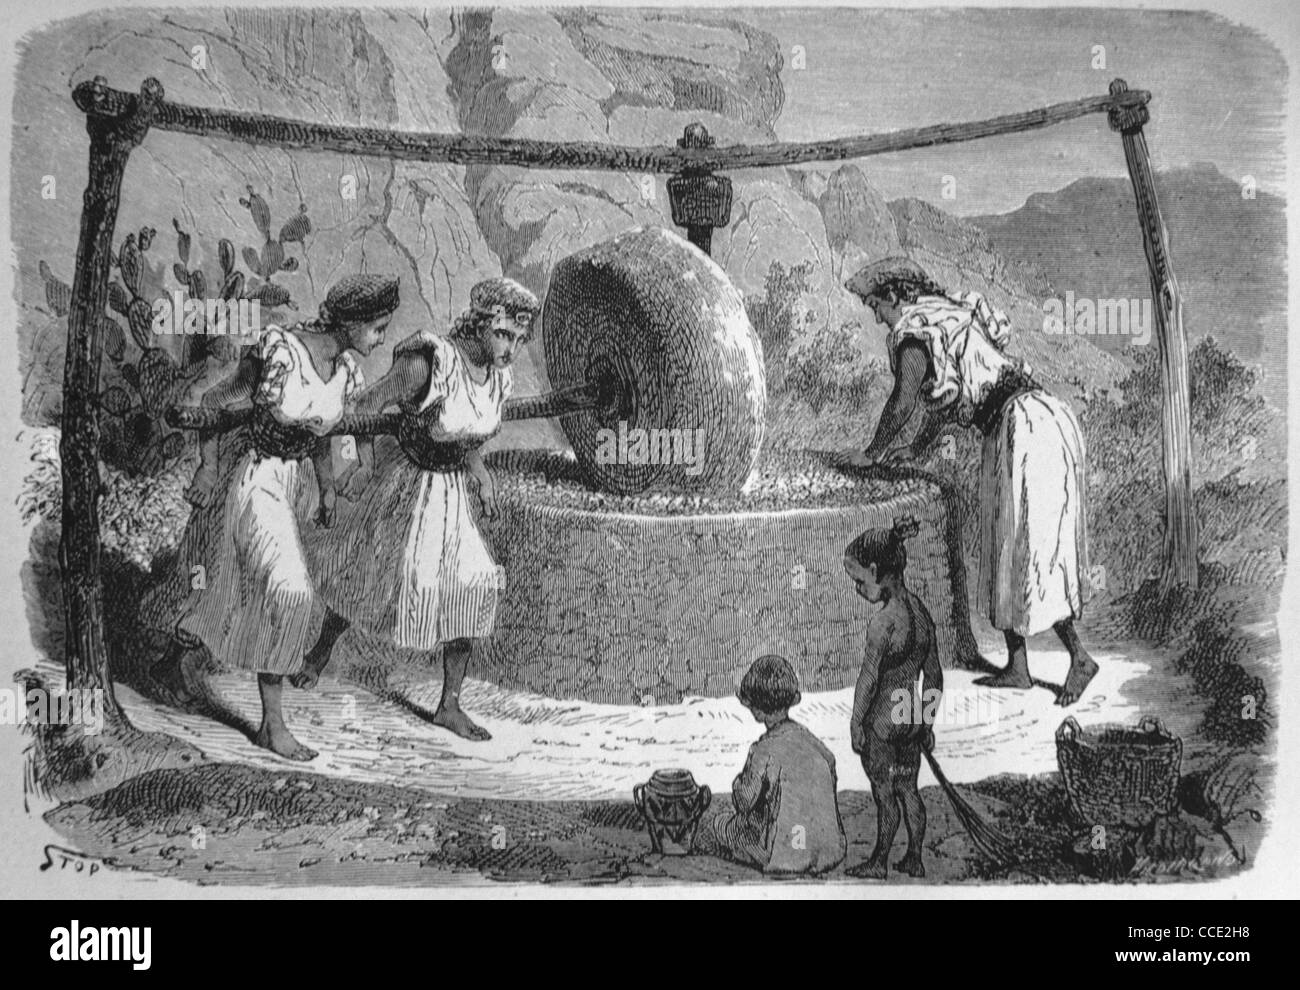 Moulin à olives ou presse à olives, Kabylie ou Kabylie, nord de l'Algérie, alimenté par l'homme ou ancien manuel. Illustration ancienne ou gravure Banque D'Images